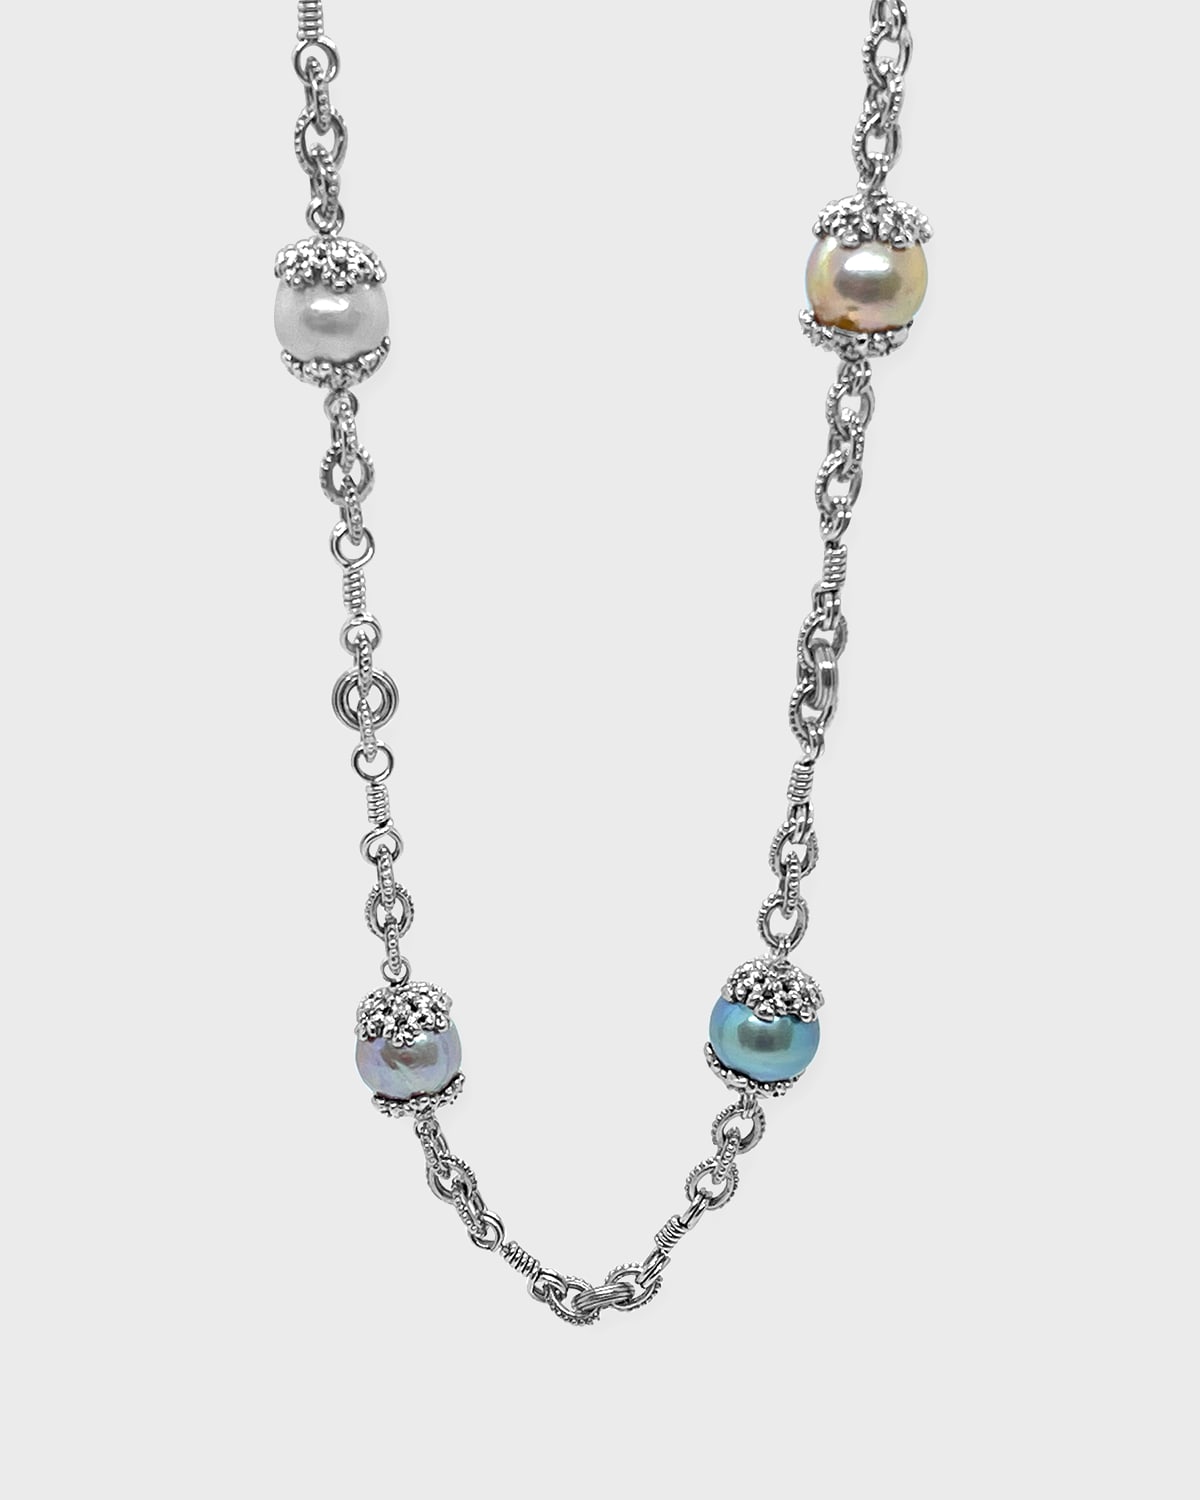 Multicolor Baroque Pearl Necklace, 36"L